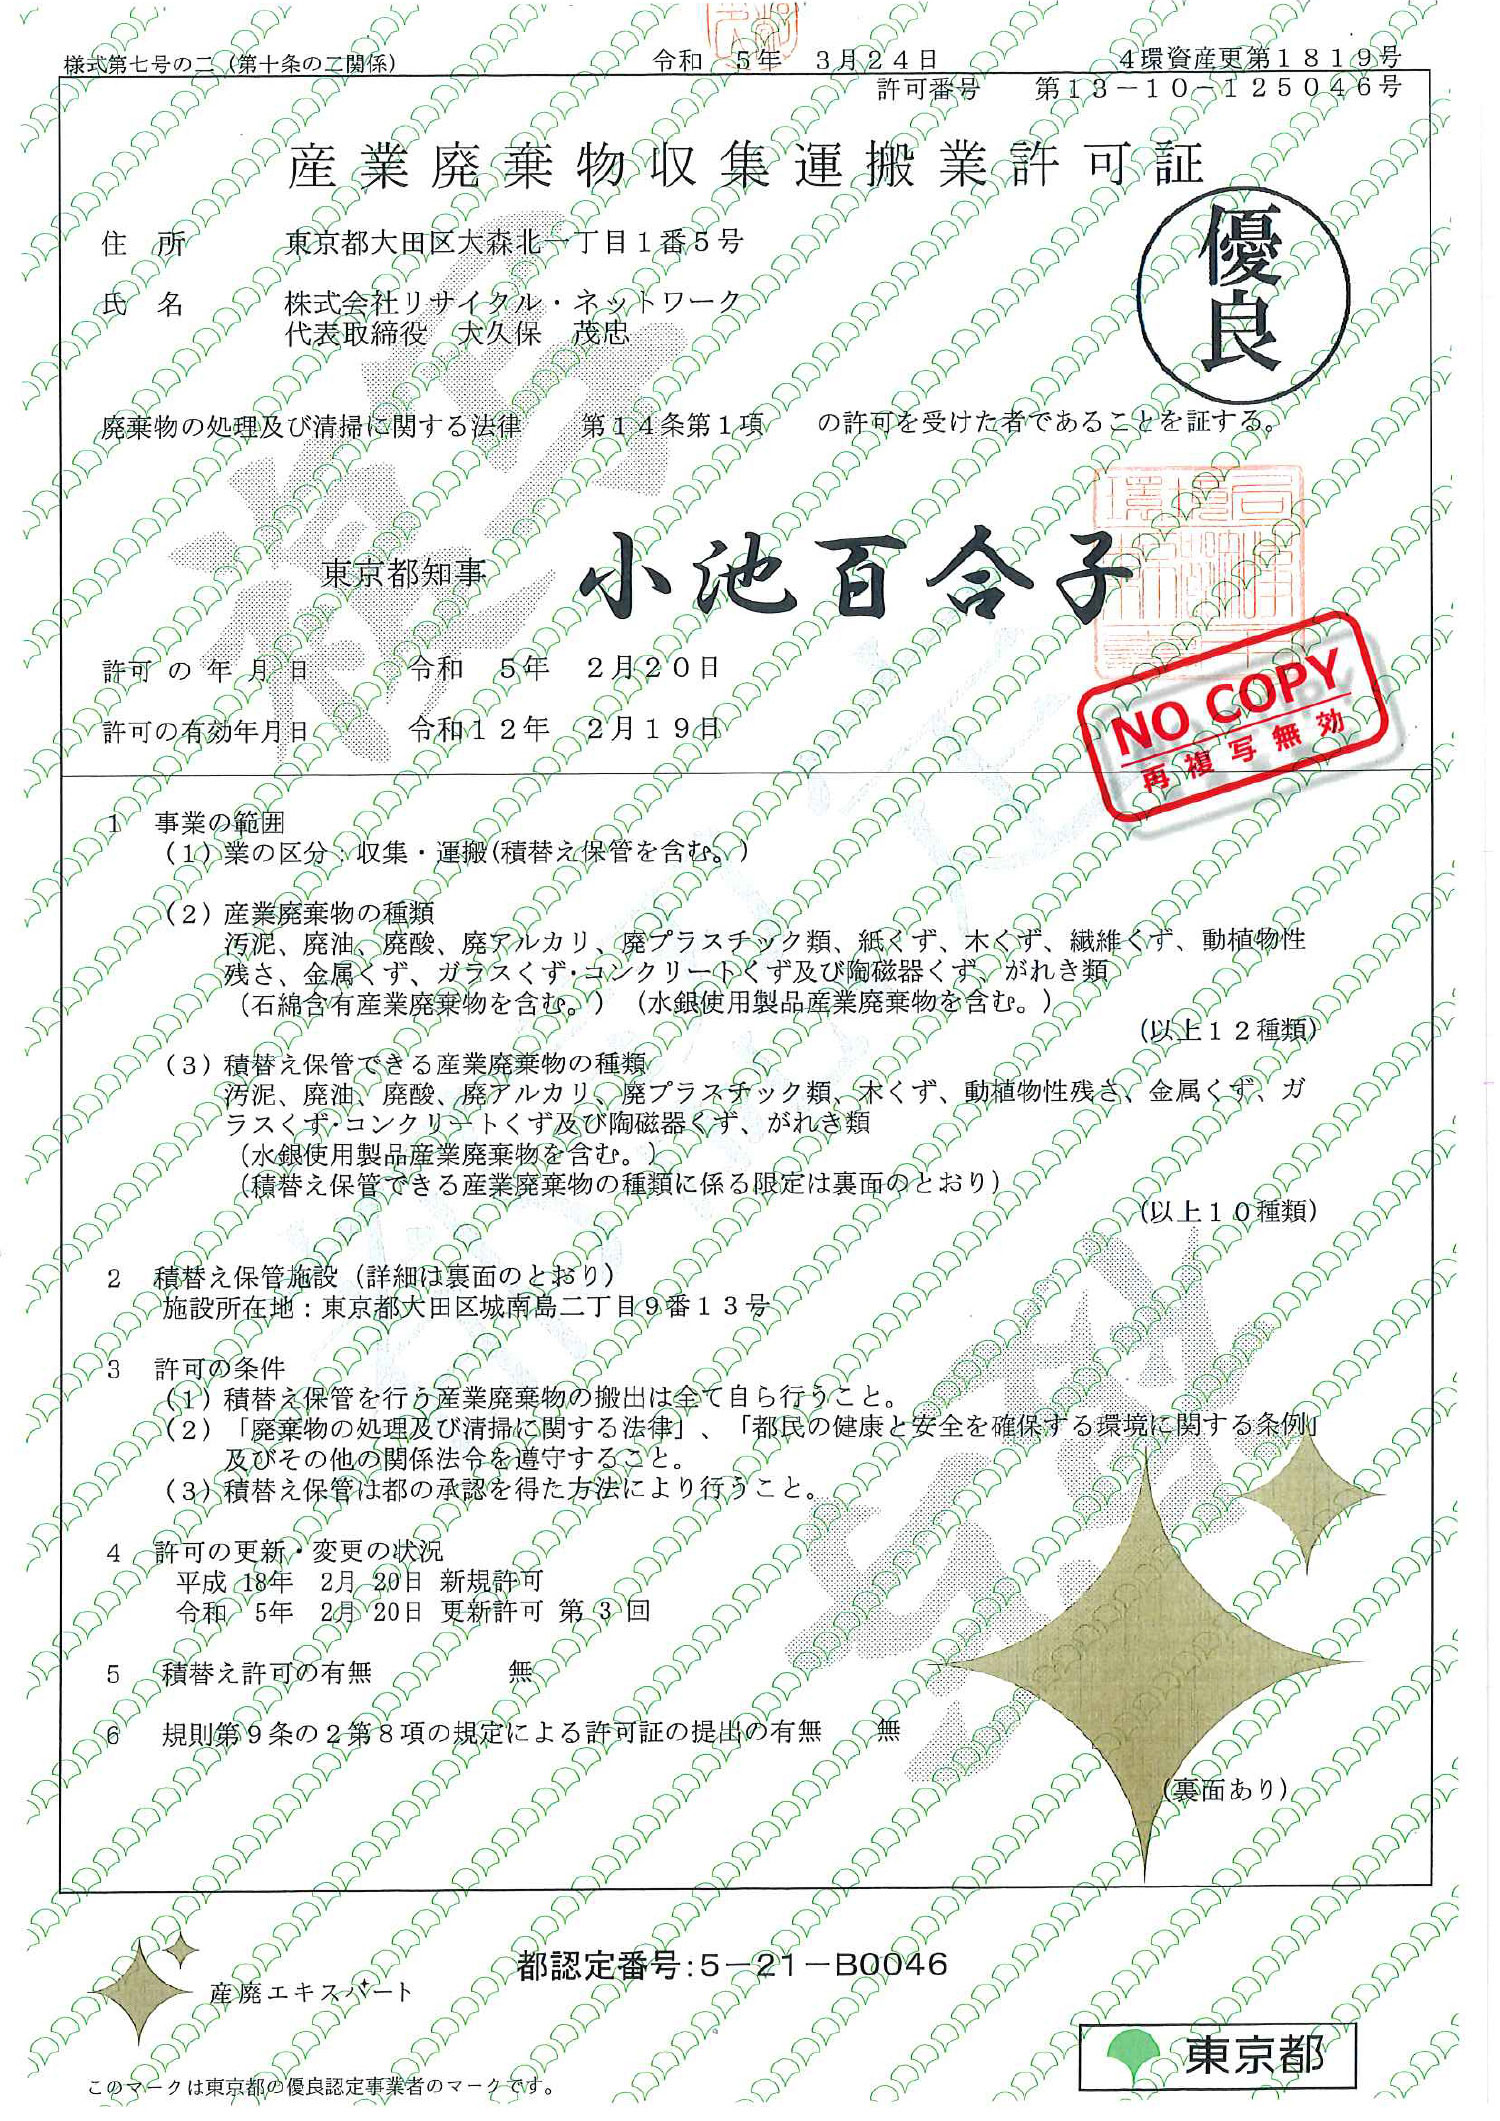 東京都 産業廃棄物収集運搬許可証